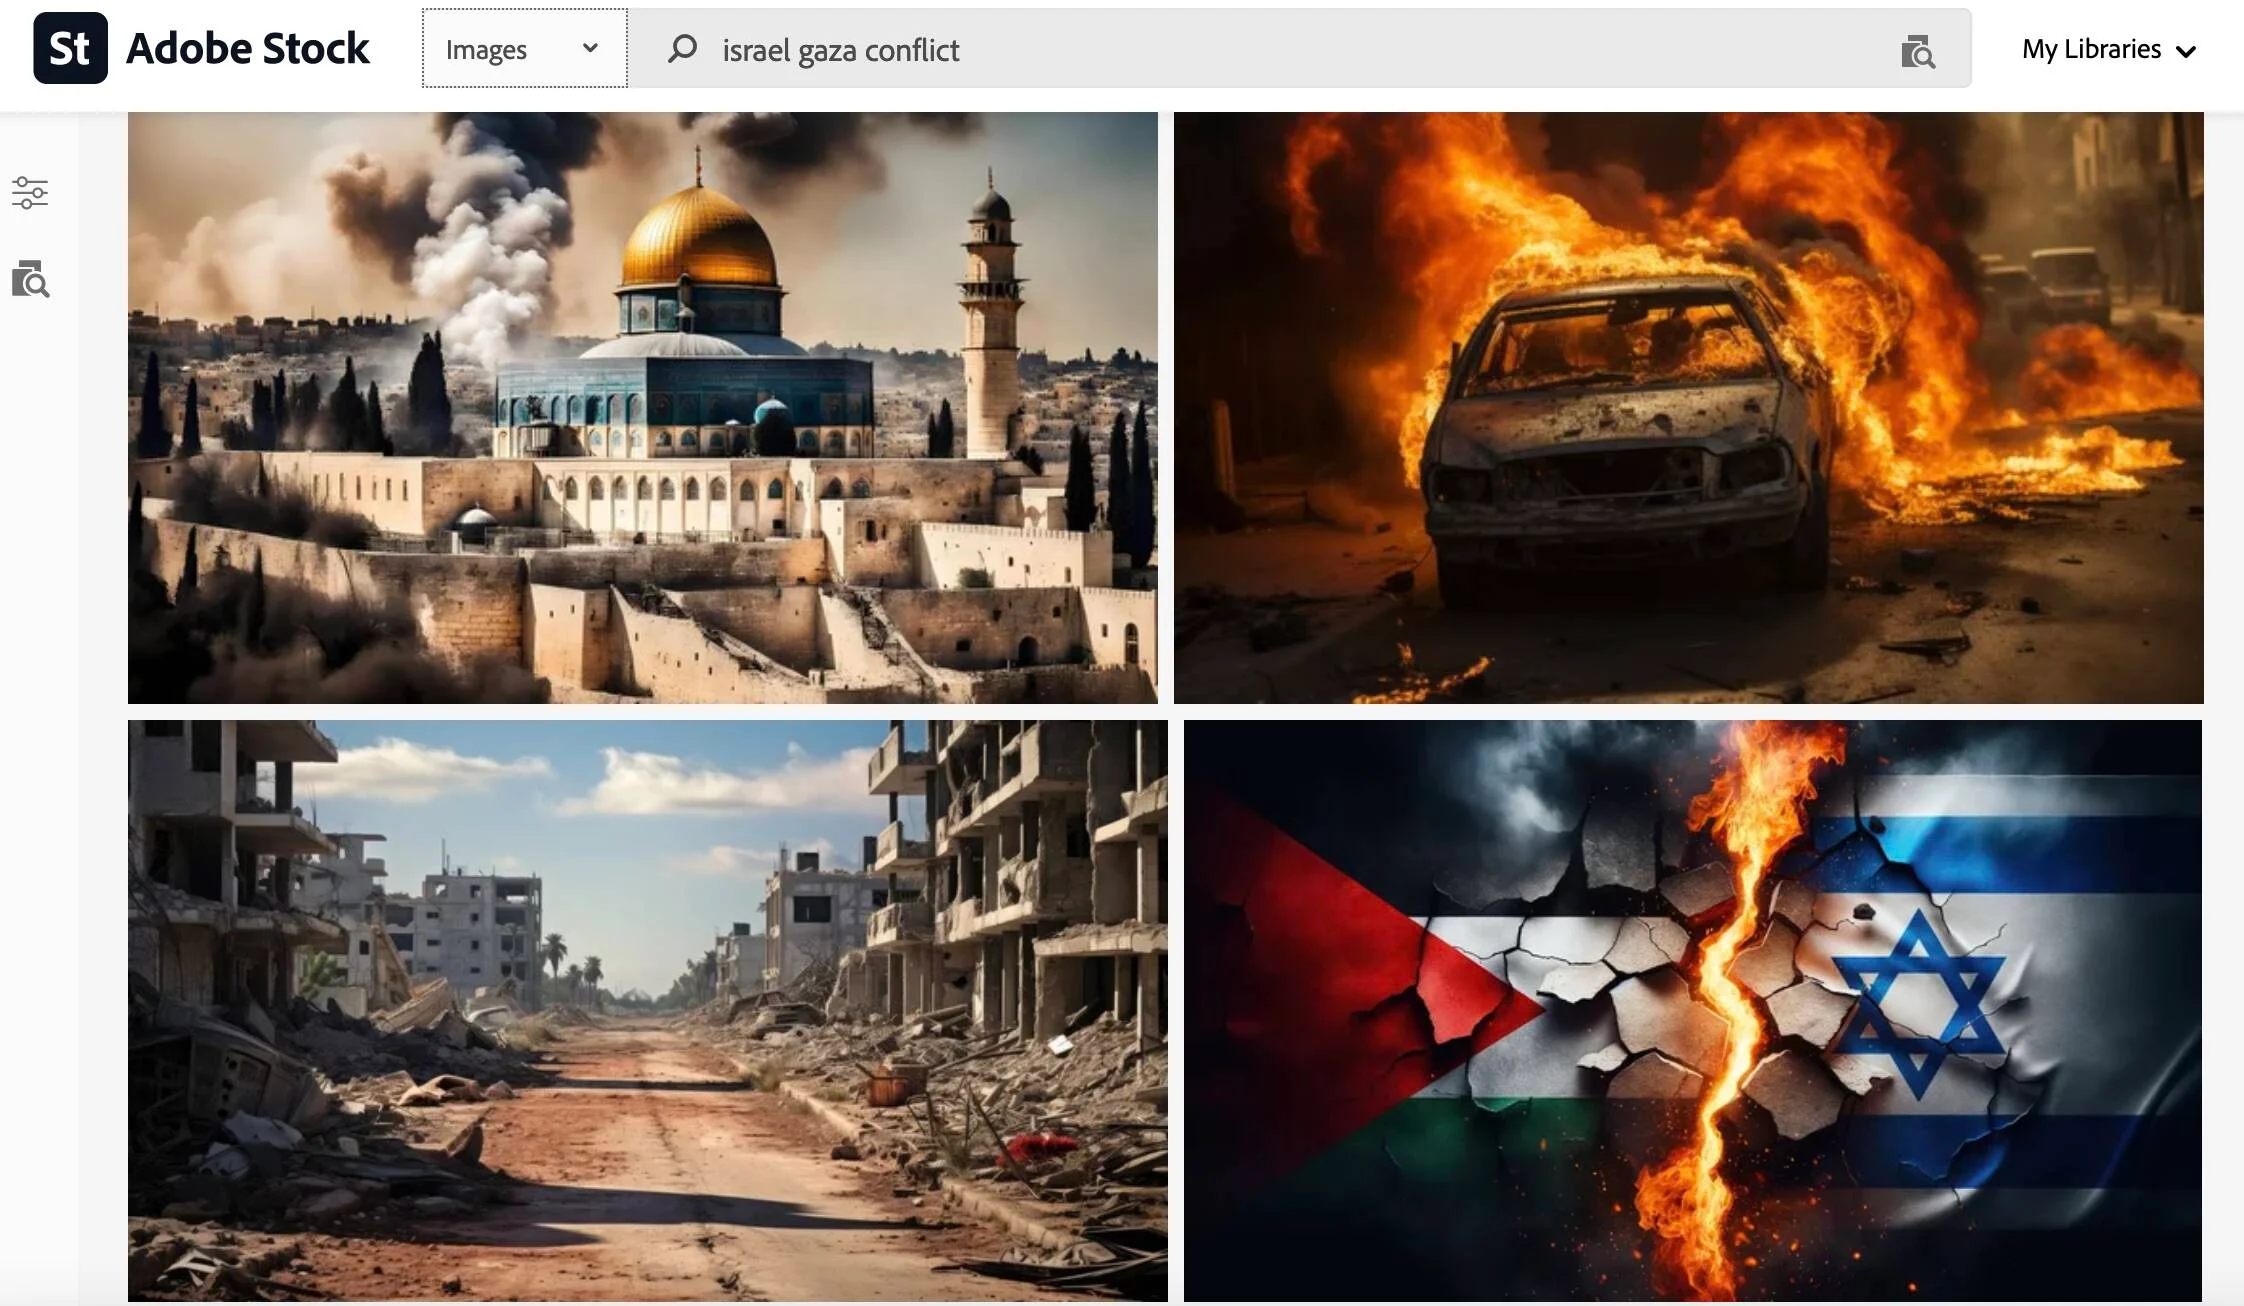 Adobe продает сгенерированные искусственным интеллектом изображения войны Израиля и ХАМАСа, которые в новостях выдают за настоящие-2